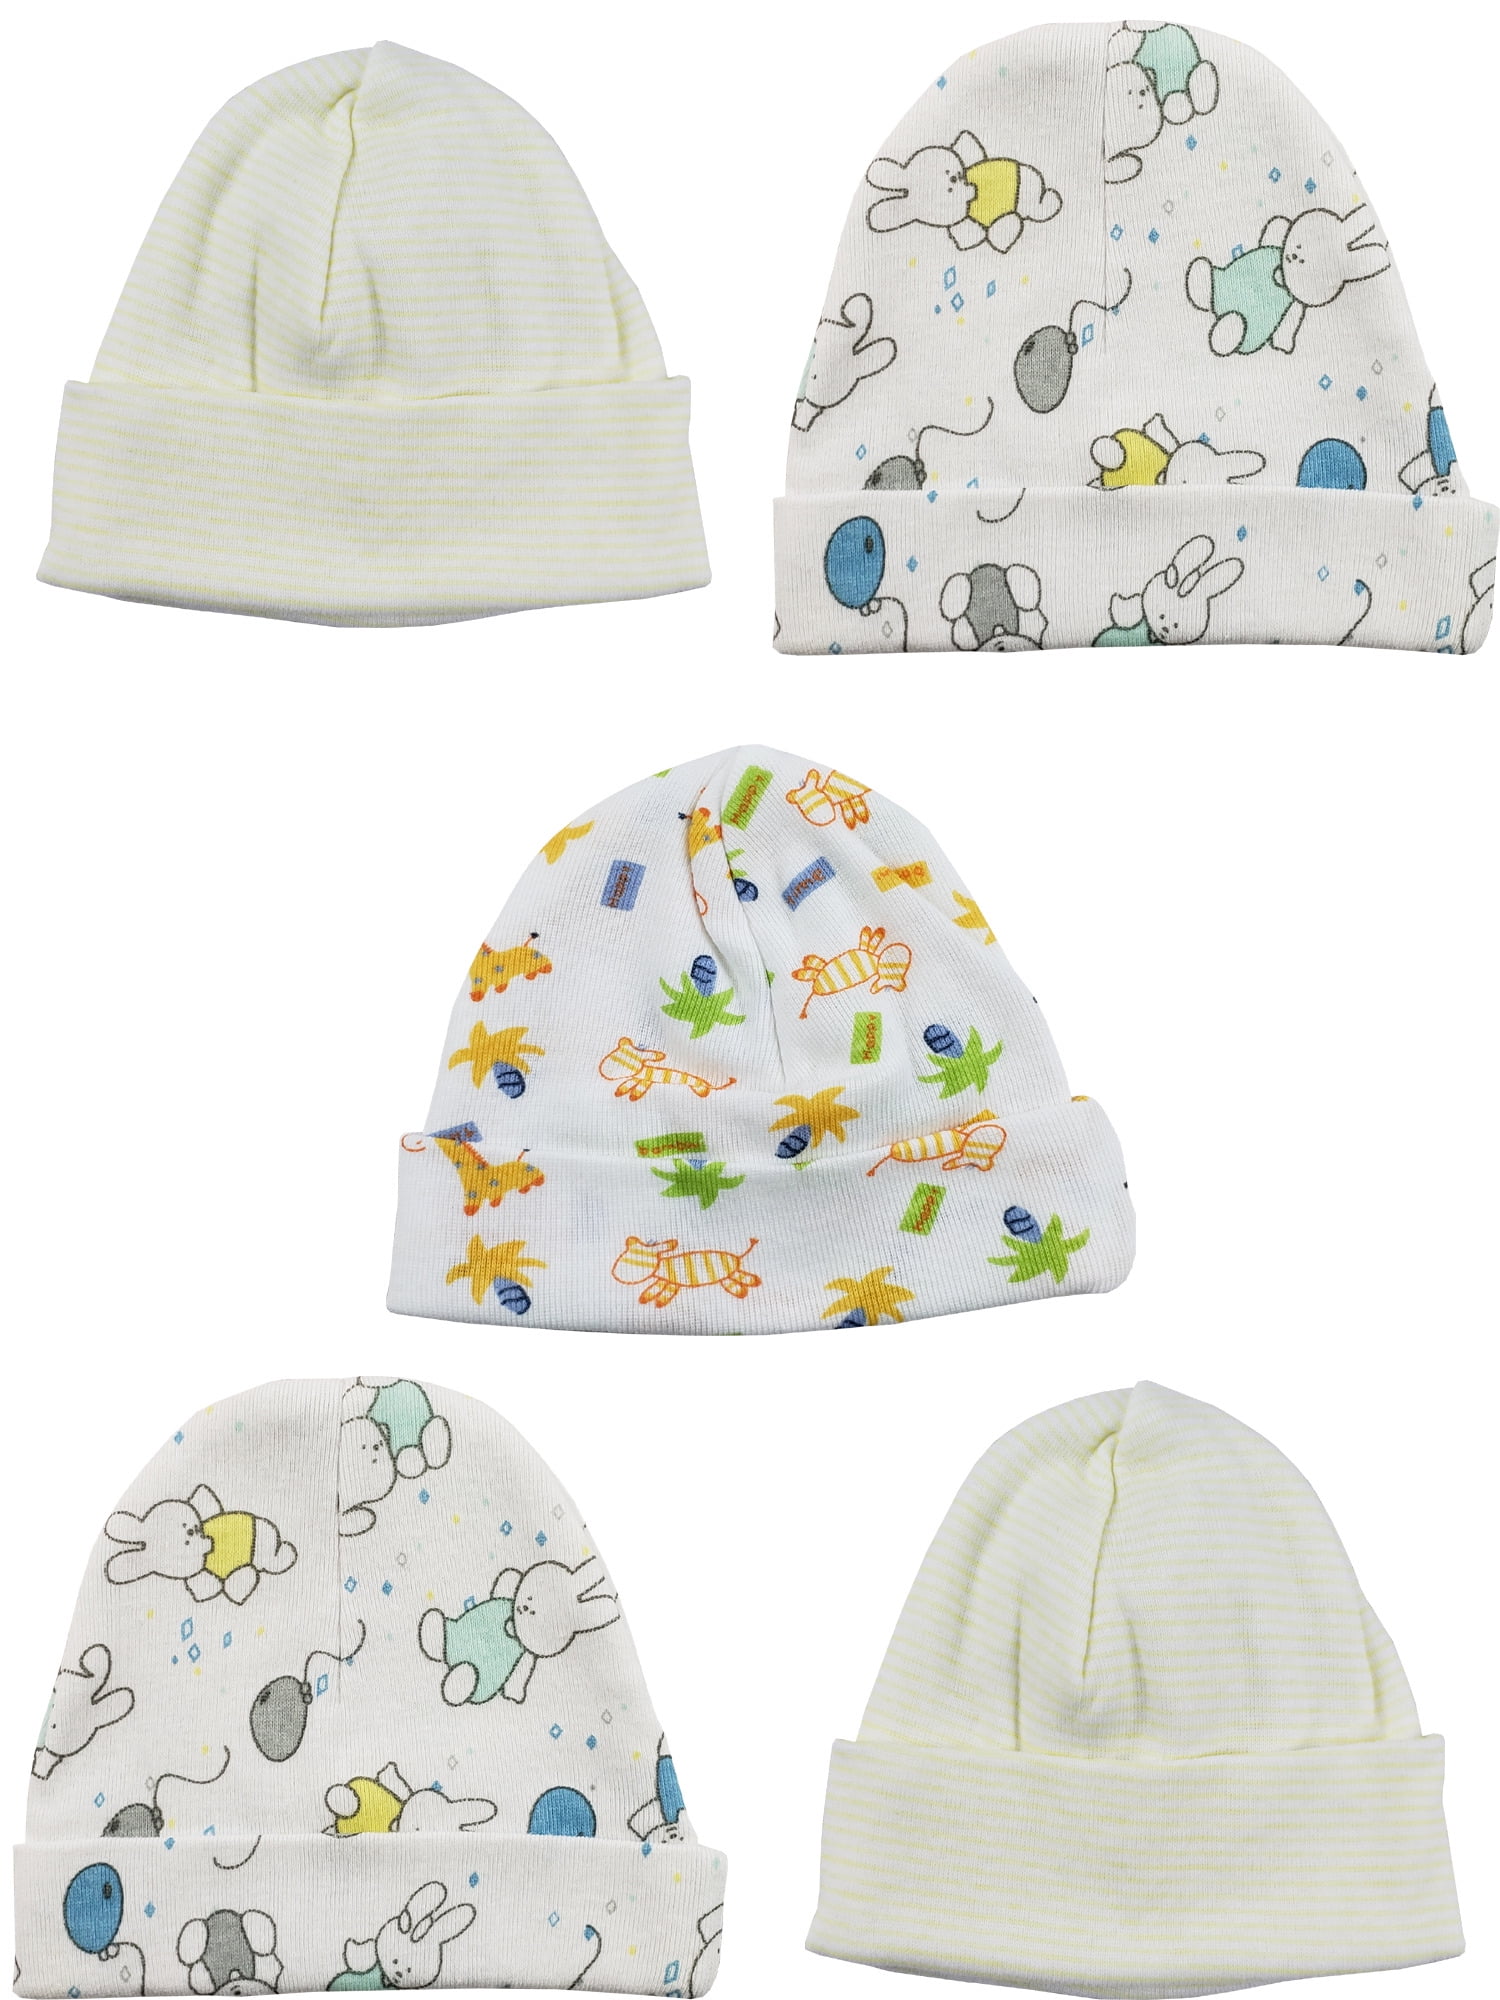 Bambini Beanie Baby Caps (Pack of 5) - Walmart.com